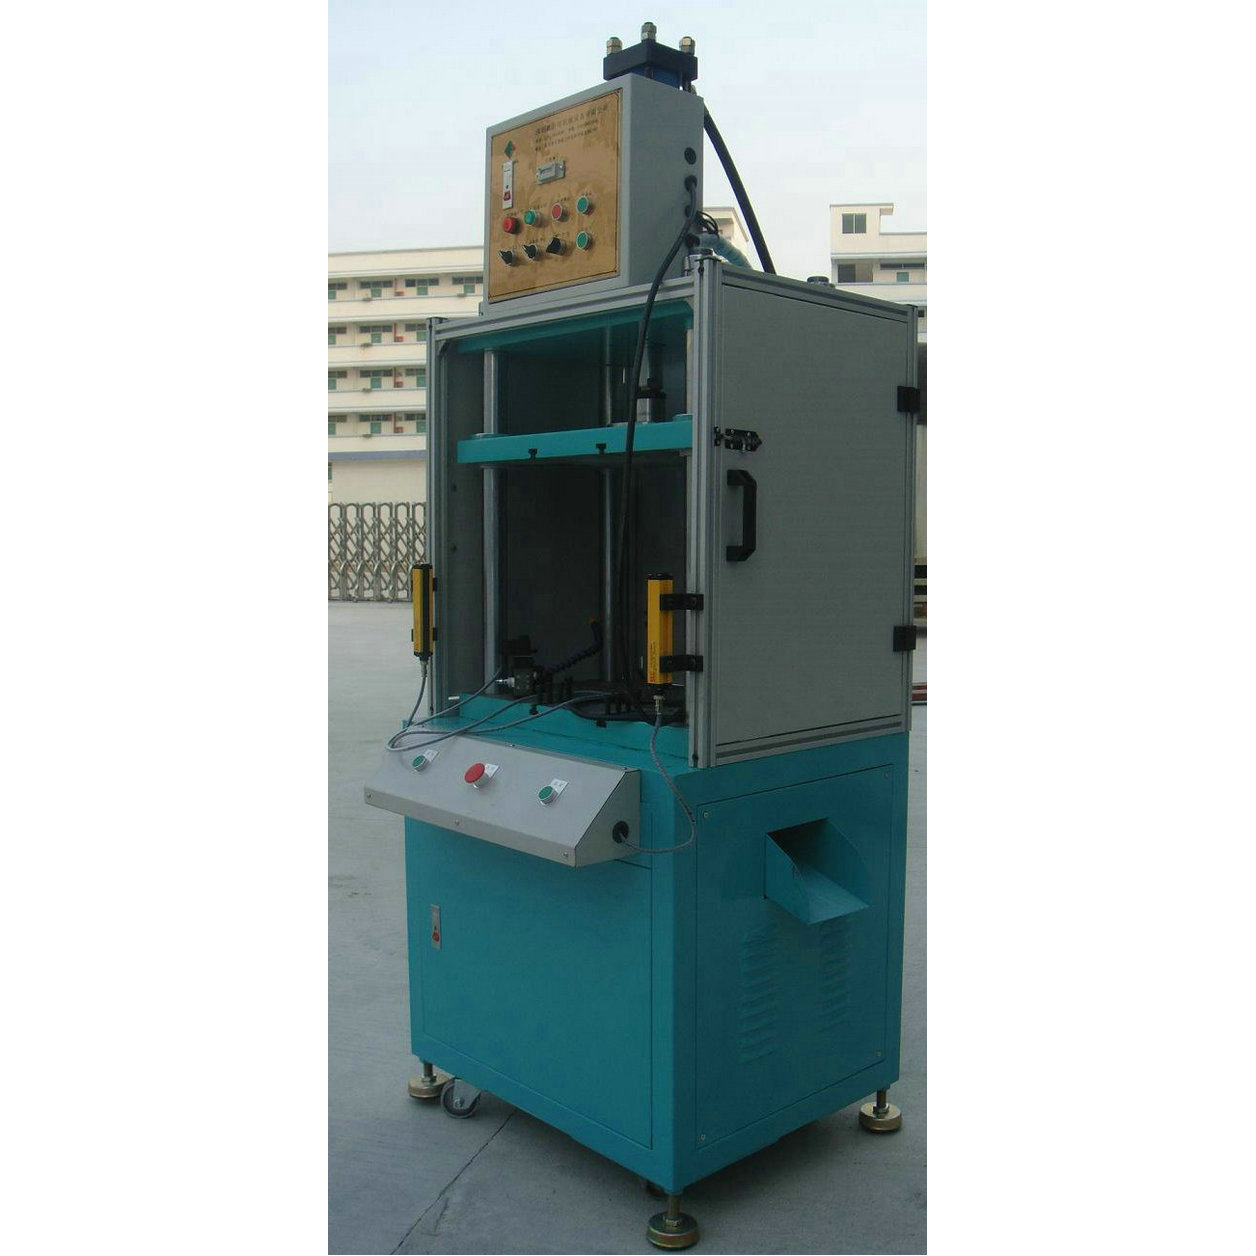 Special four-column hydraulic press